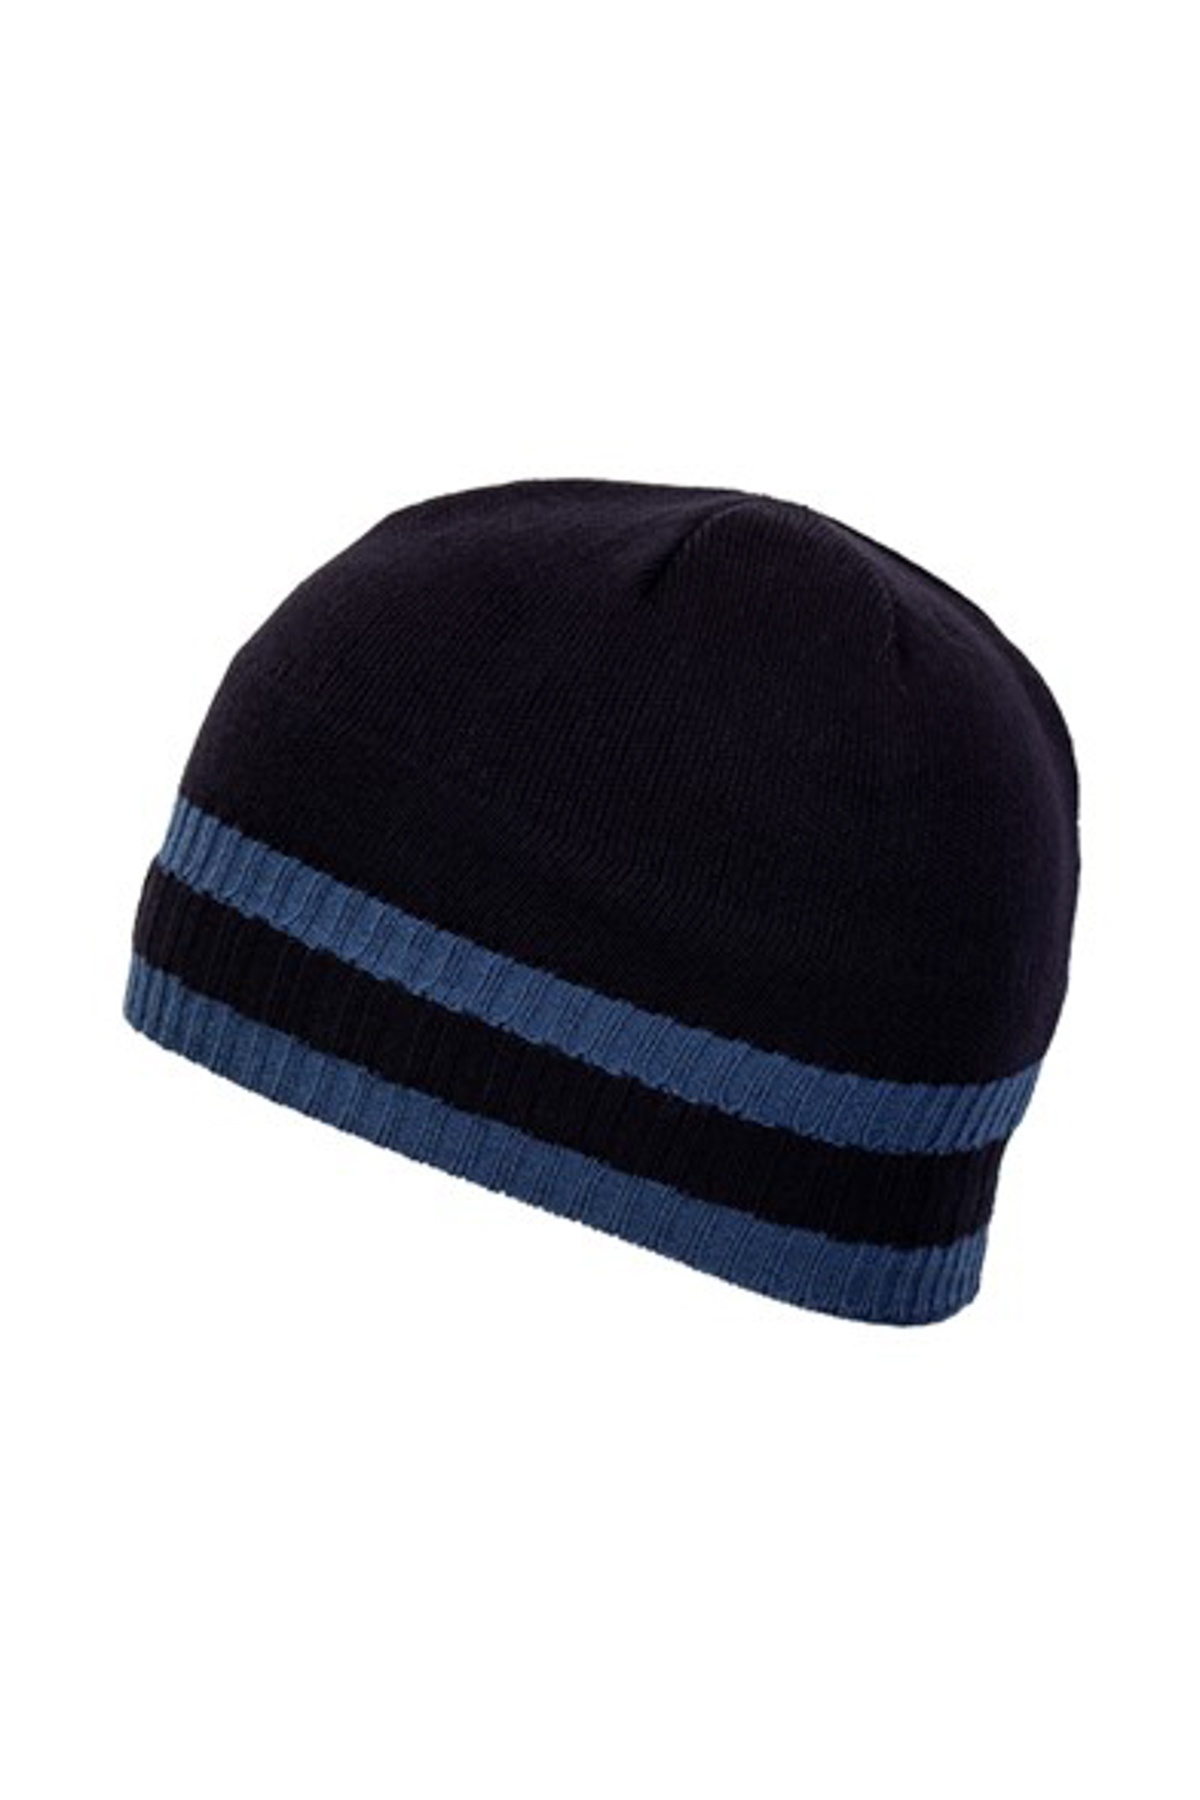 узорчатый темно синий шапка